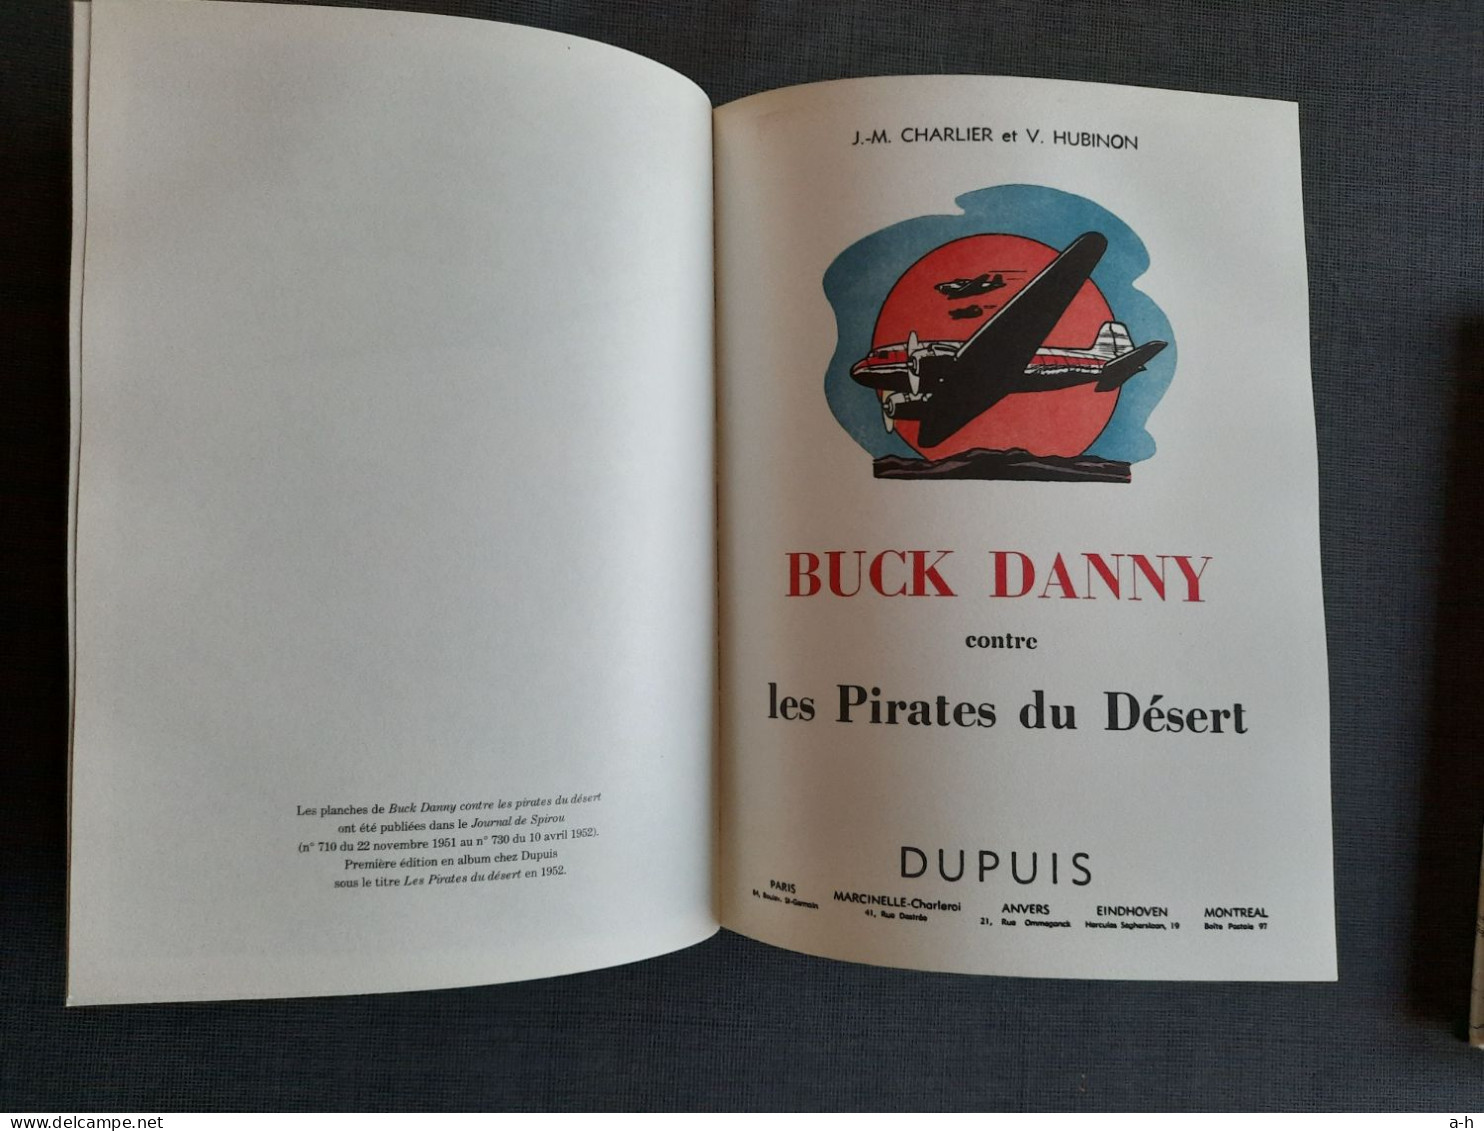 B. Danny intégrale Dupuis n° 3 et 5, 1ière édition. BE.